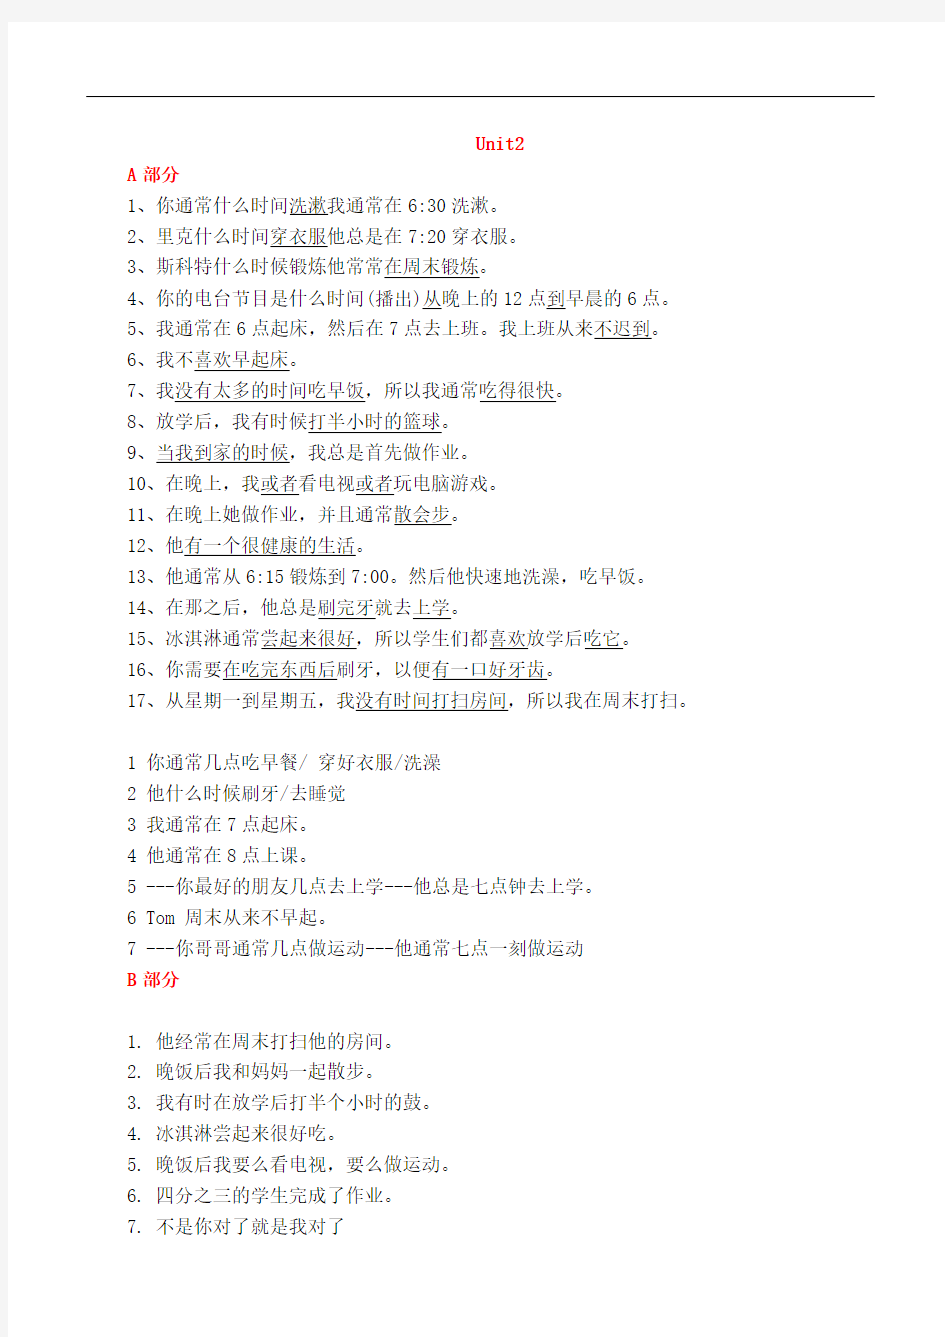 新人教版七年级下册各单元句子翻译(汉语)